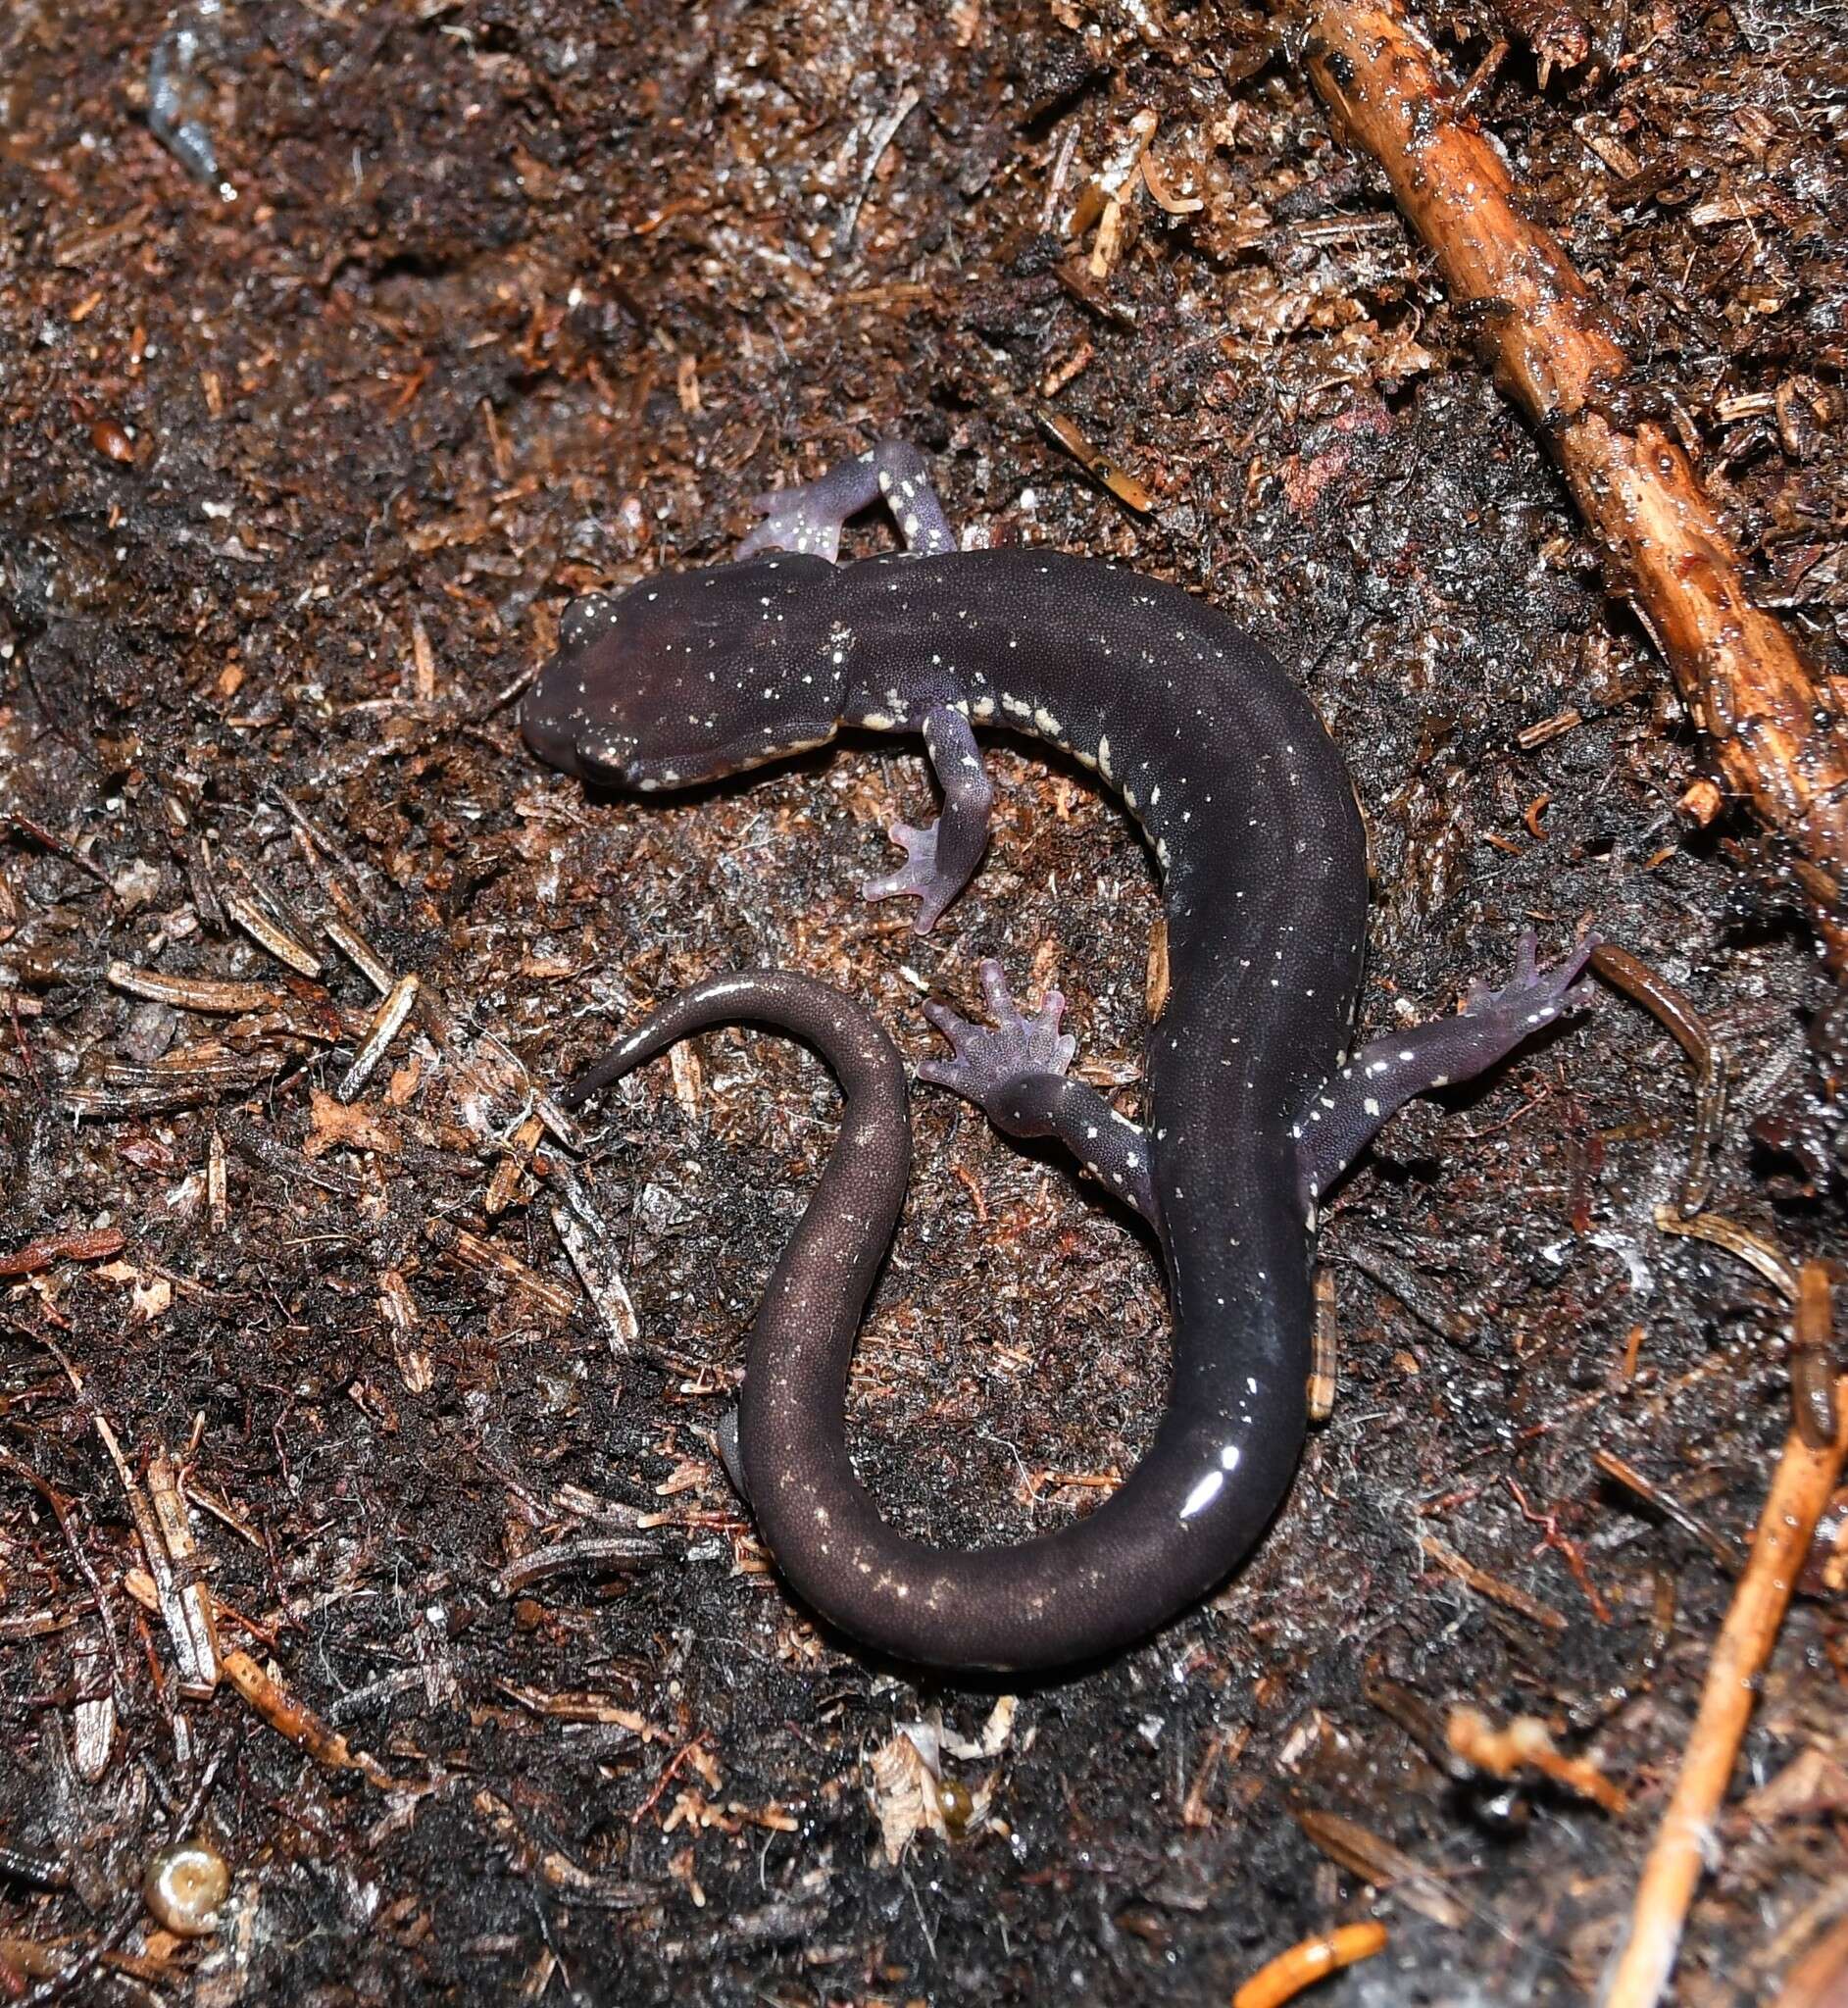 Image of Wehrle's Salamander